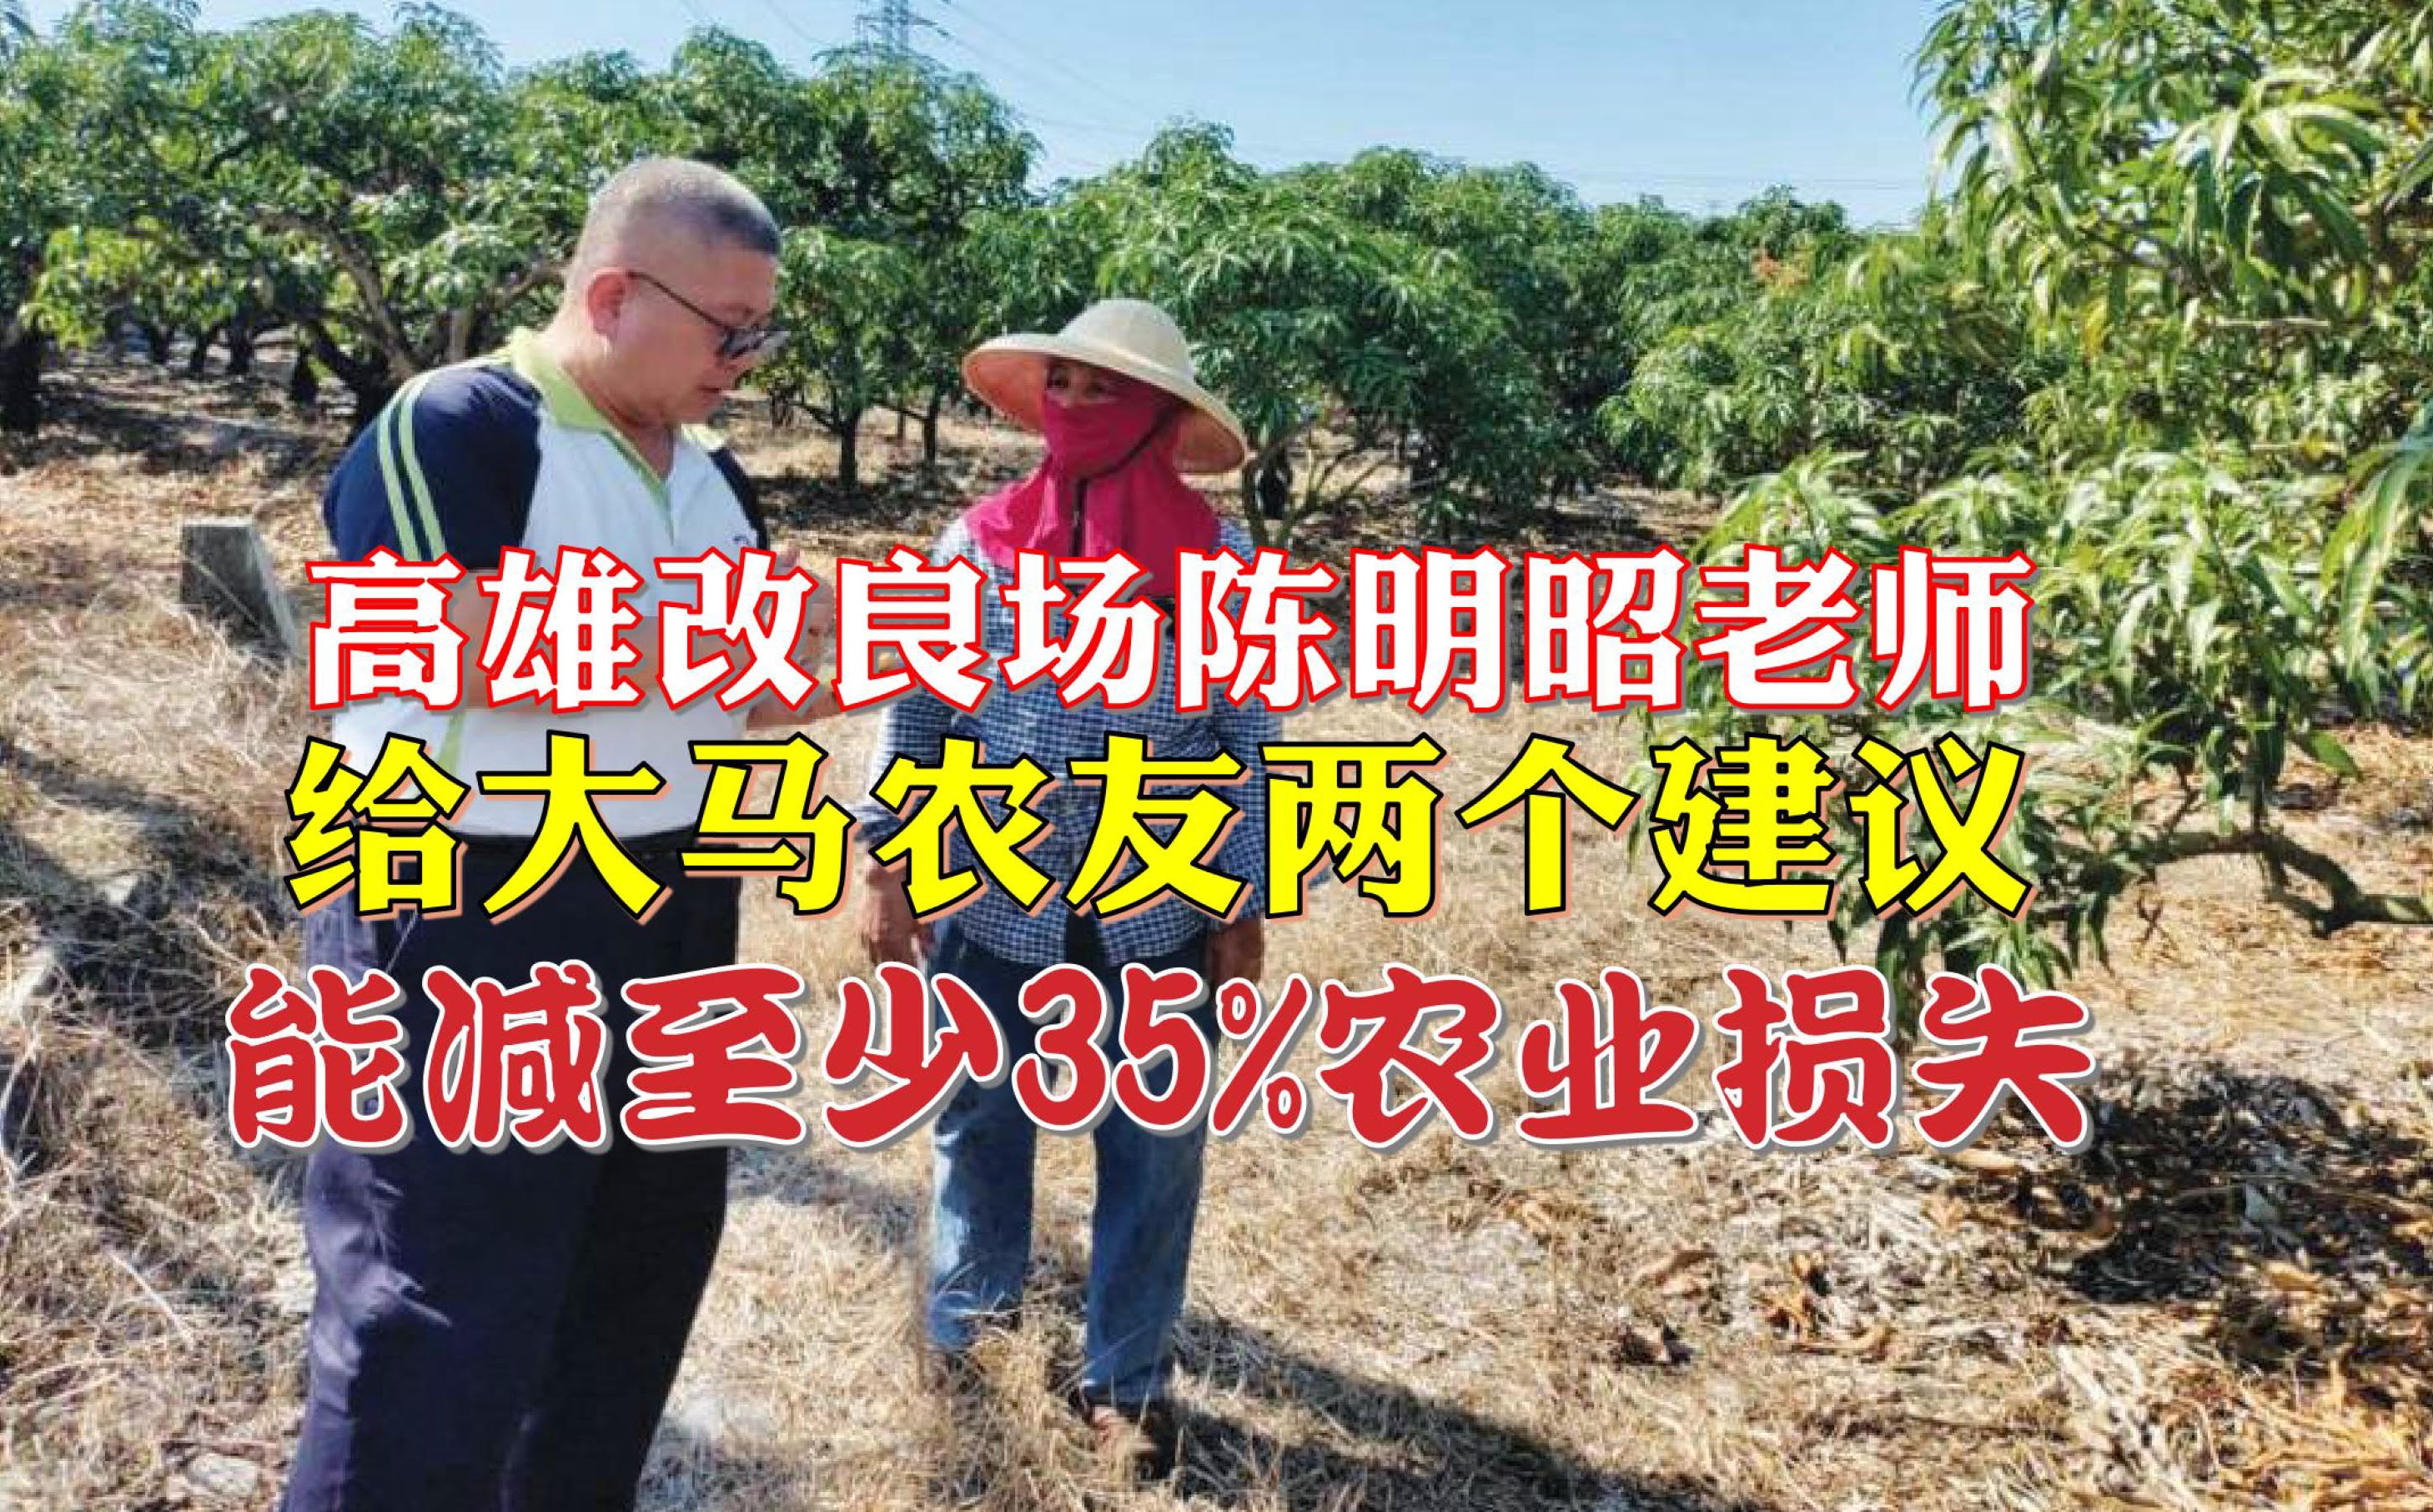 南台湾植保战将 给大马农友的两个建议 - 农牧世界